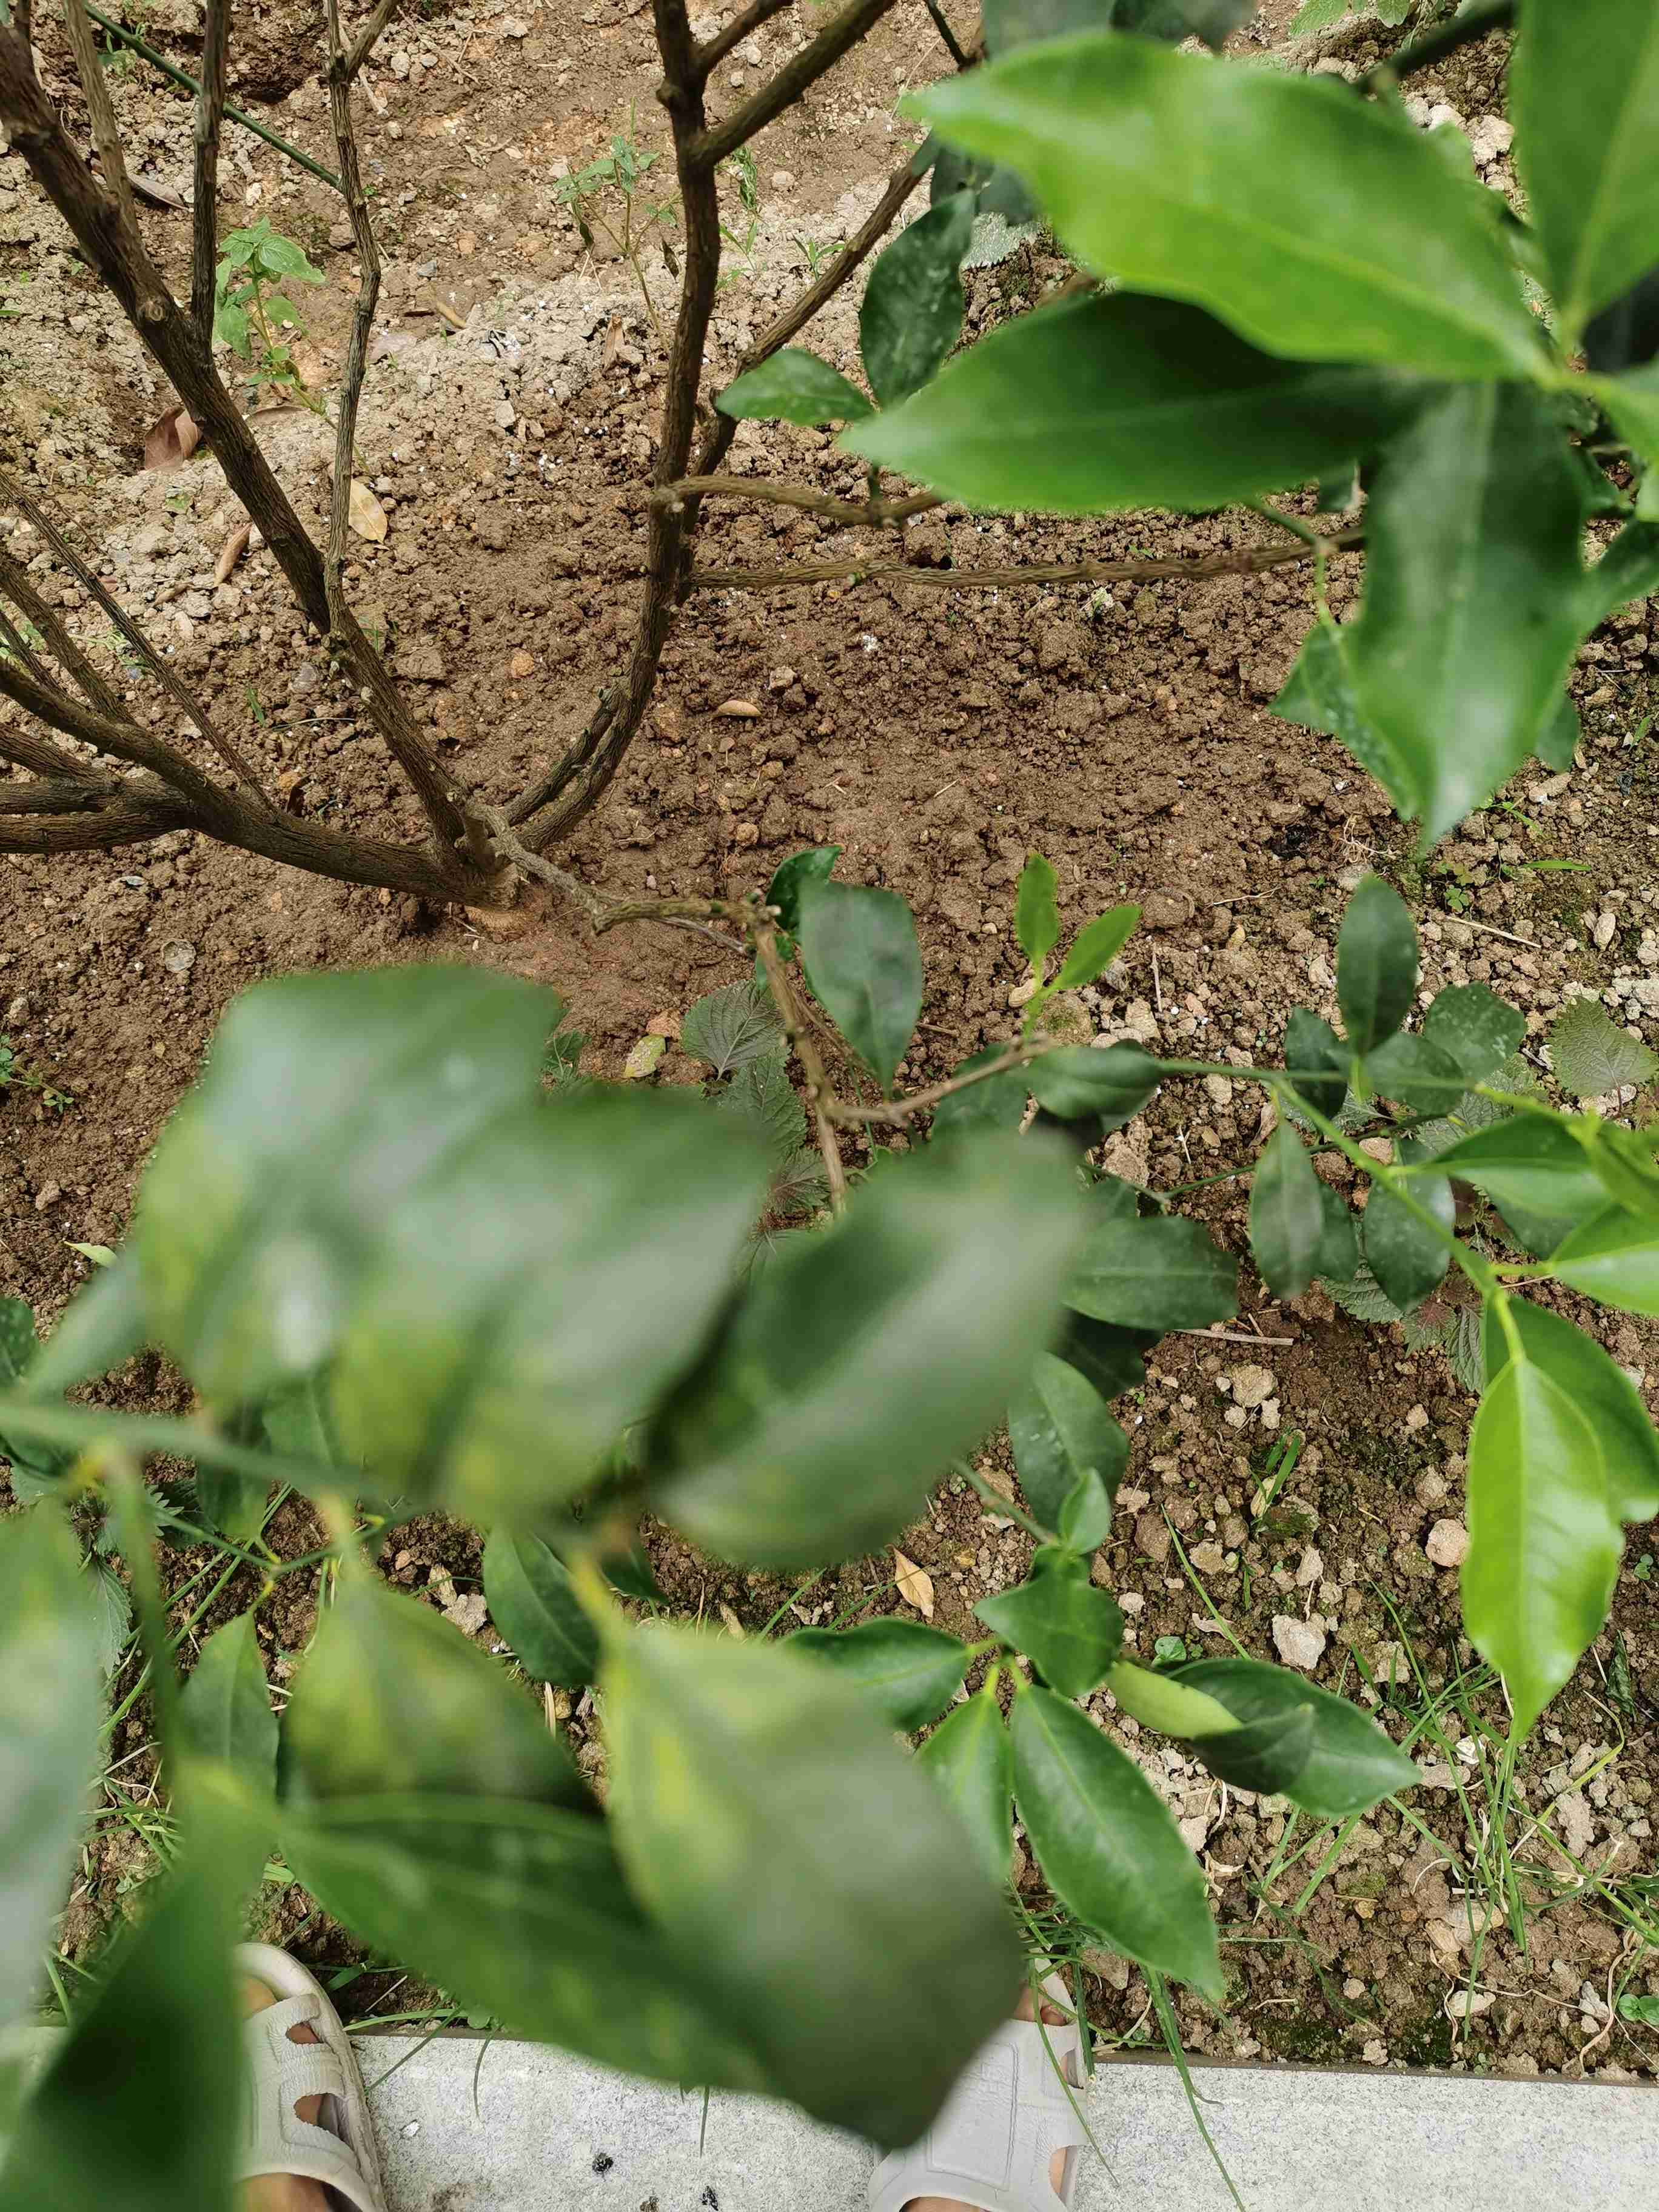 盆栽金桔叶子卷曲变干图片